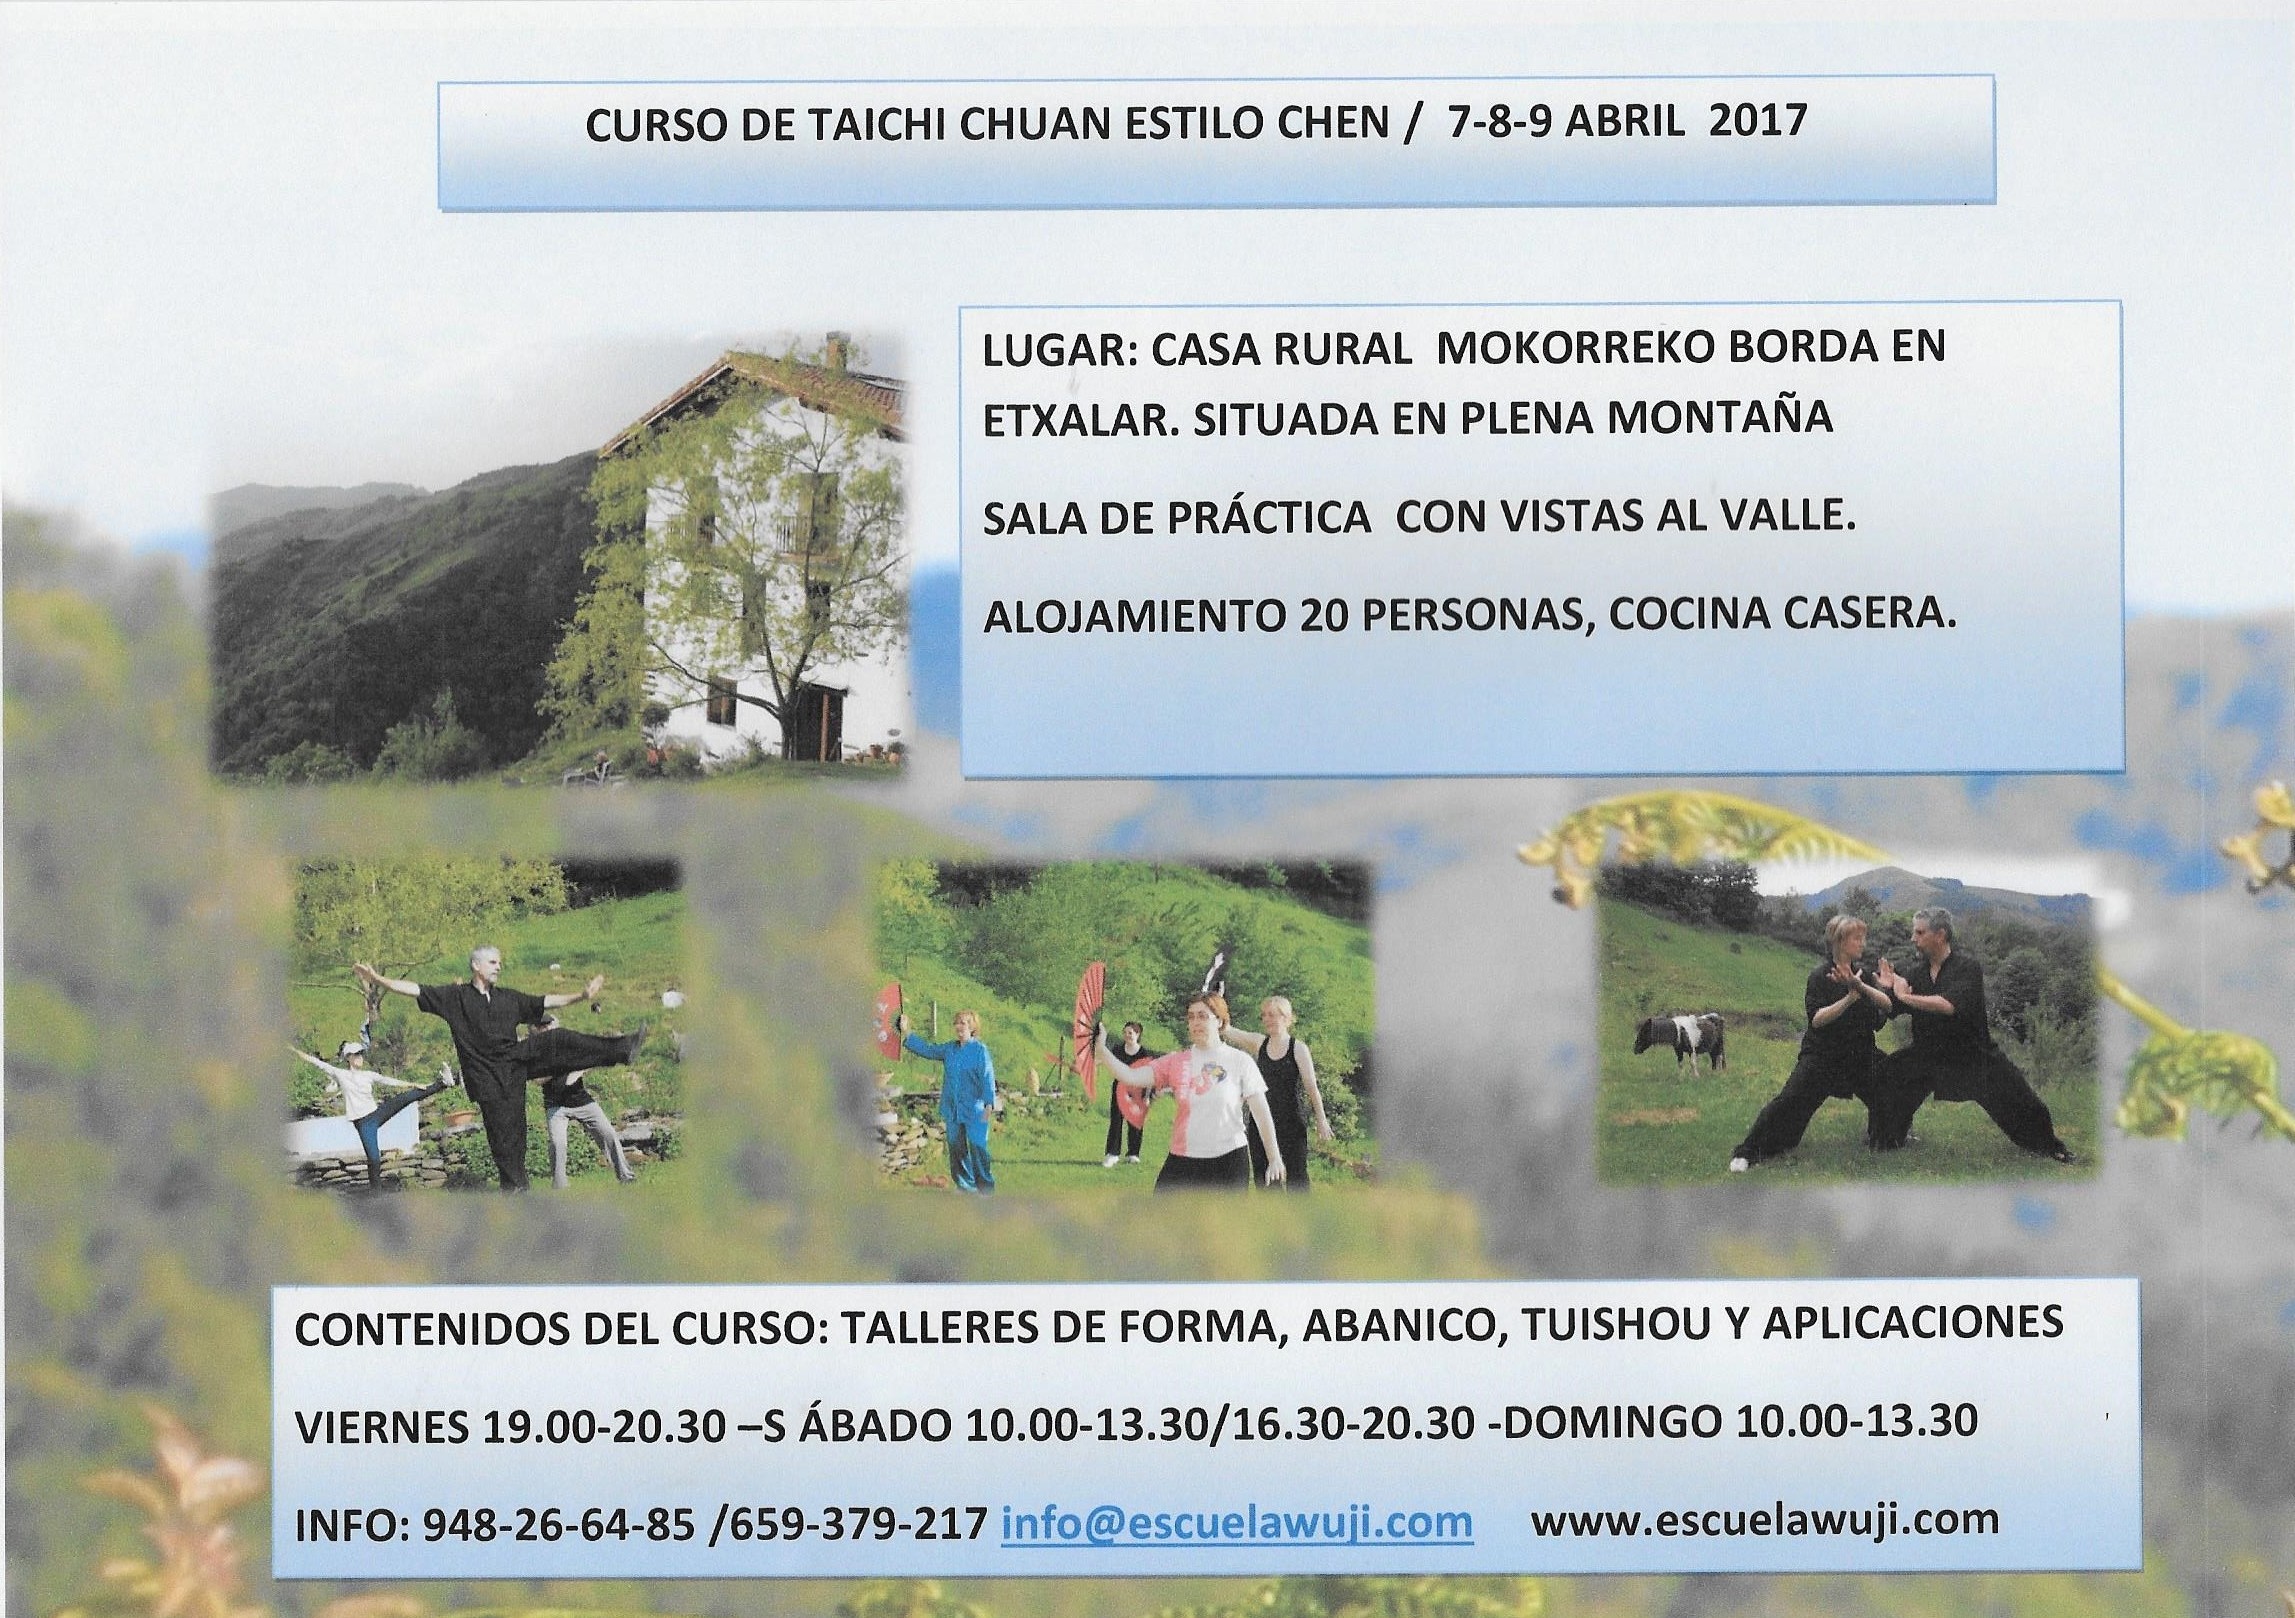 Próximos | CURSO DE TAI CHI EN CASA RURAL, 7-8-9 ABRIL 2017 | Escuela Wuji